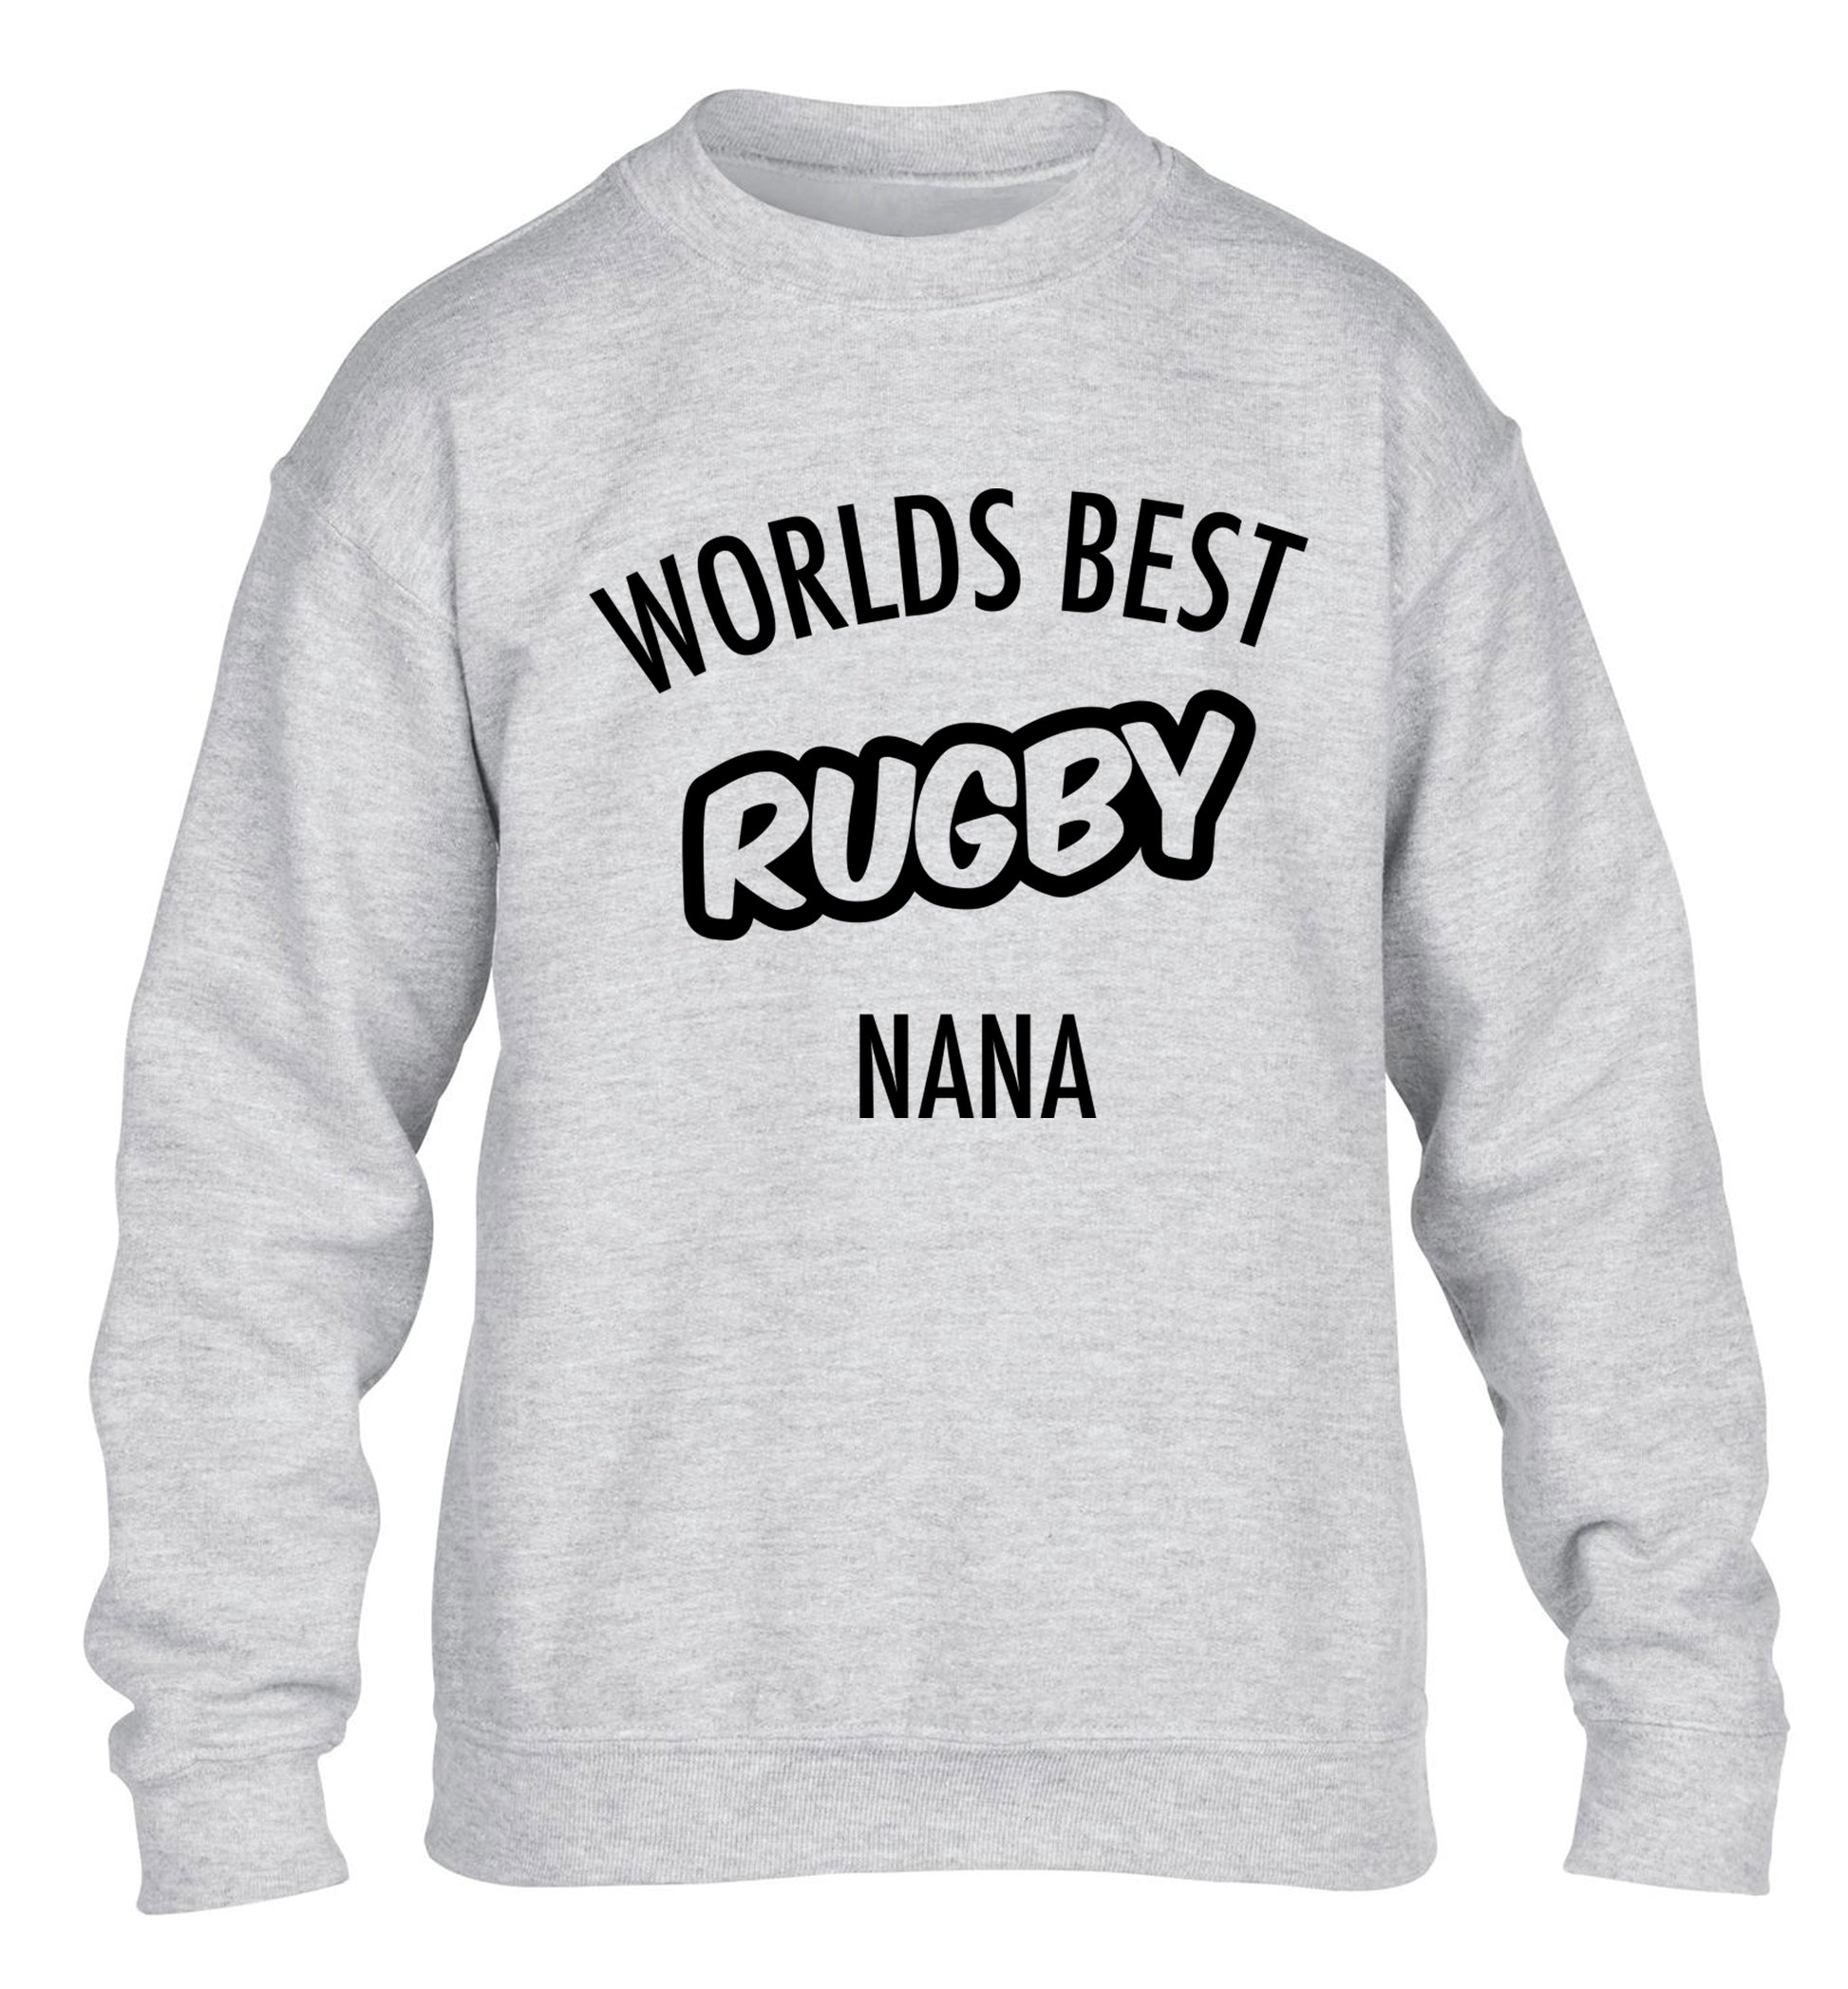 Worlds Best Rugby Grandma children's grey sweater 12-13 Years